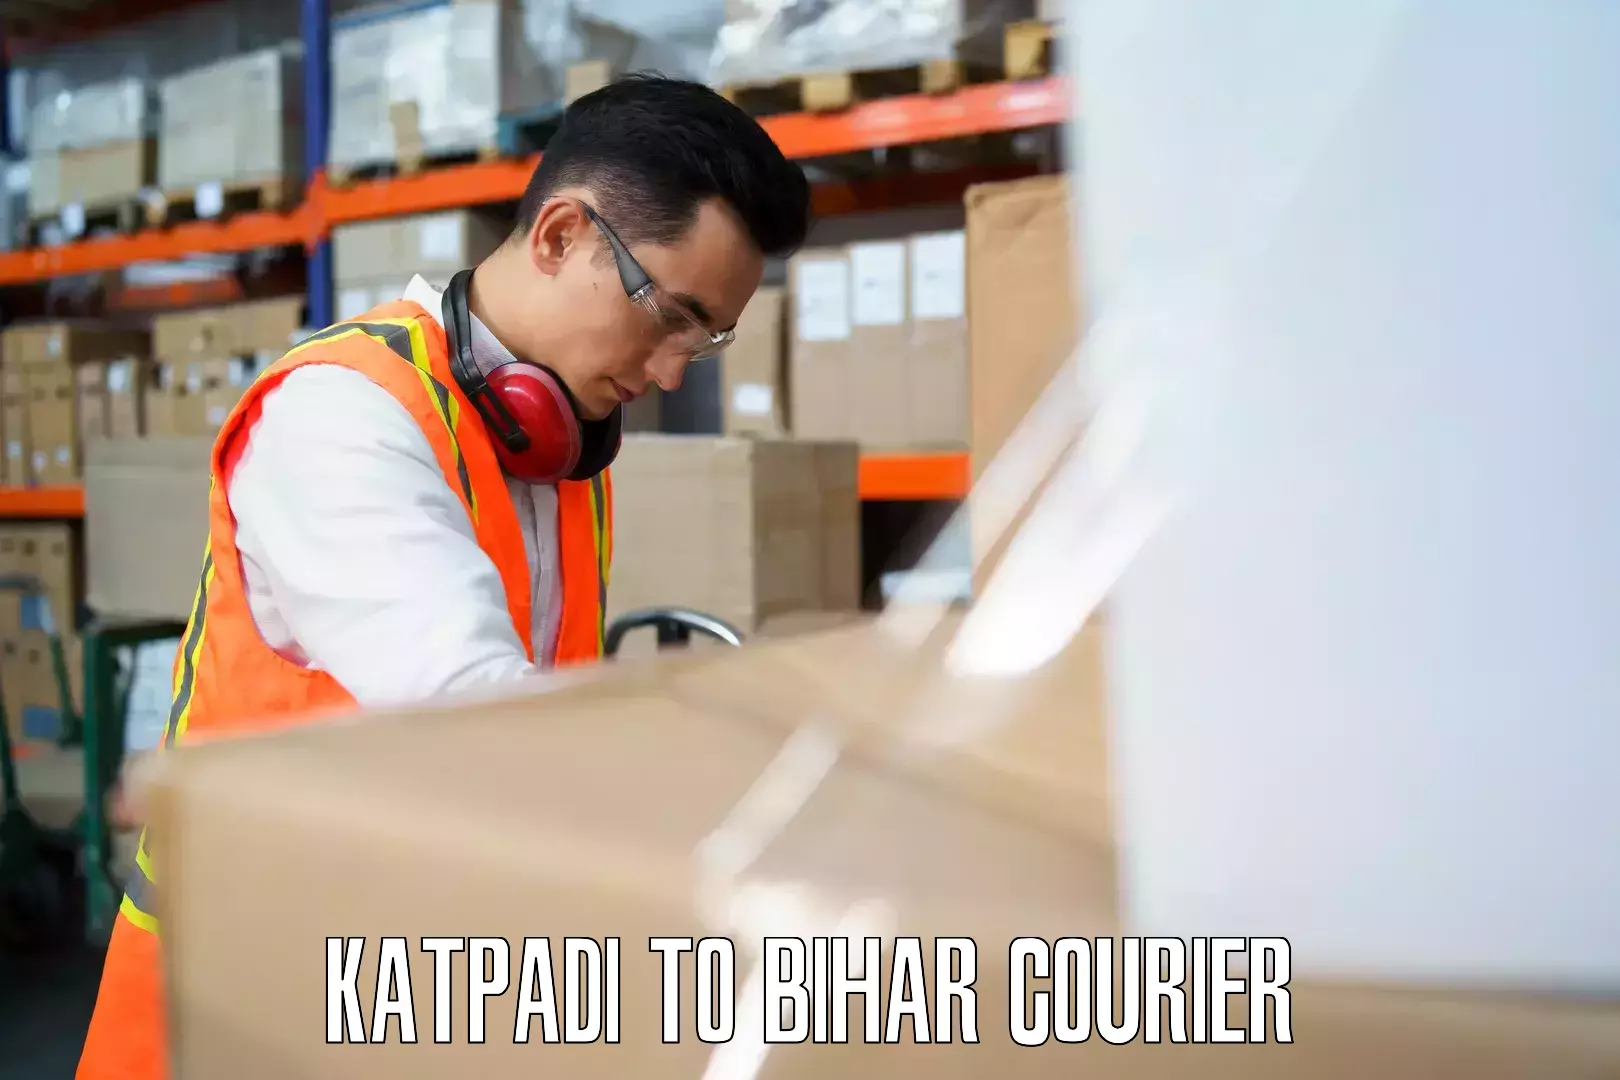 Baggage shipping quotes Katpadi to Tekari